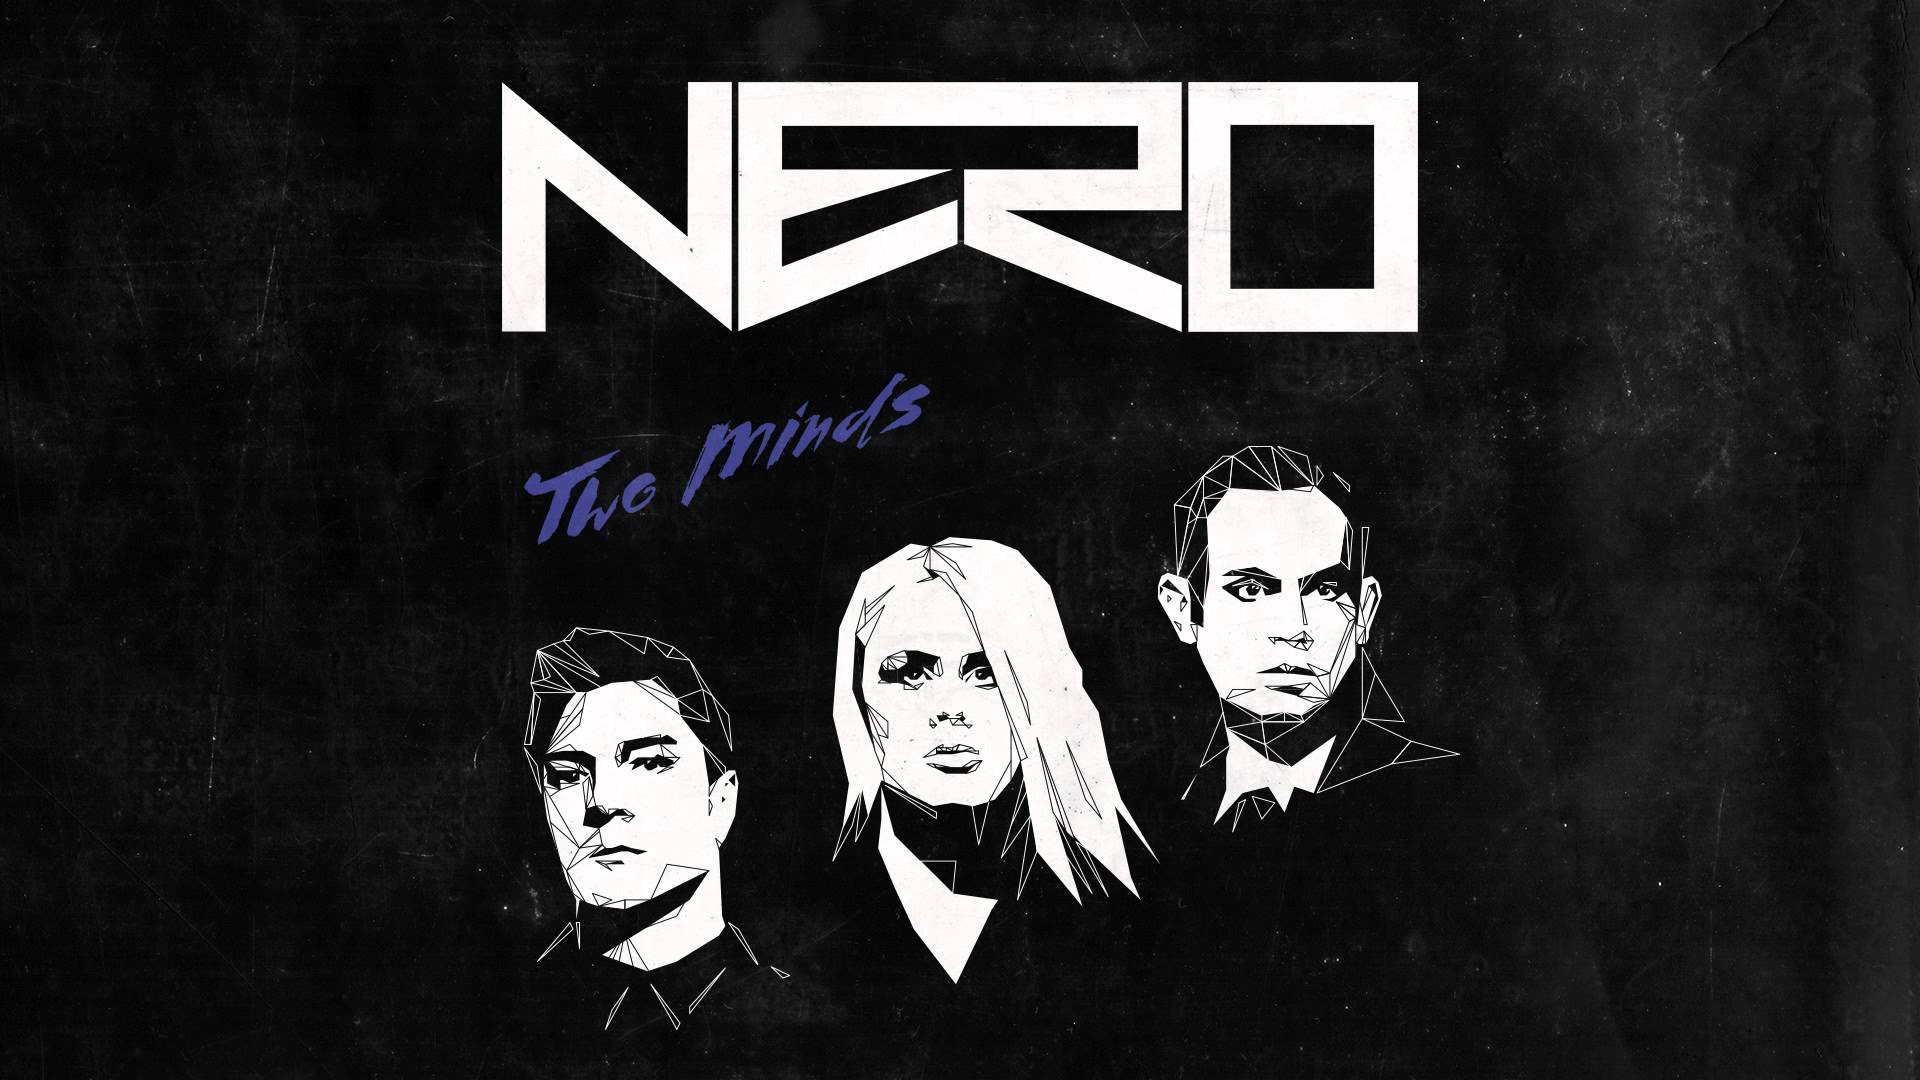 Nero satisfy. Nero группа. Nero обложки. Неро певица. Nero two Minds.